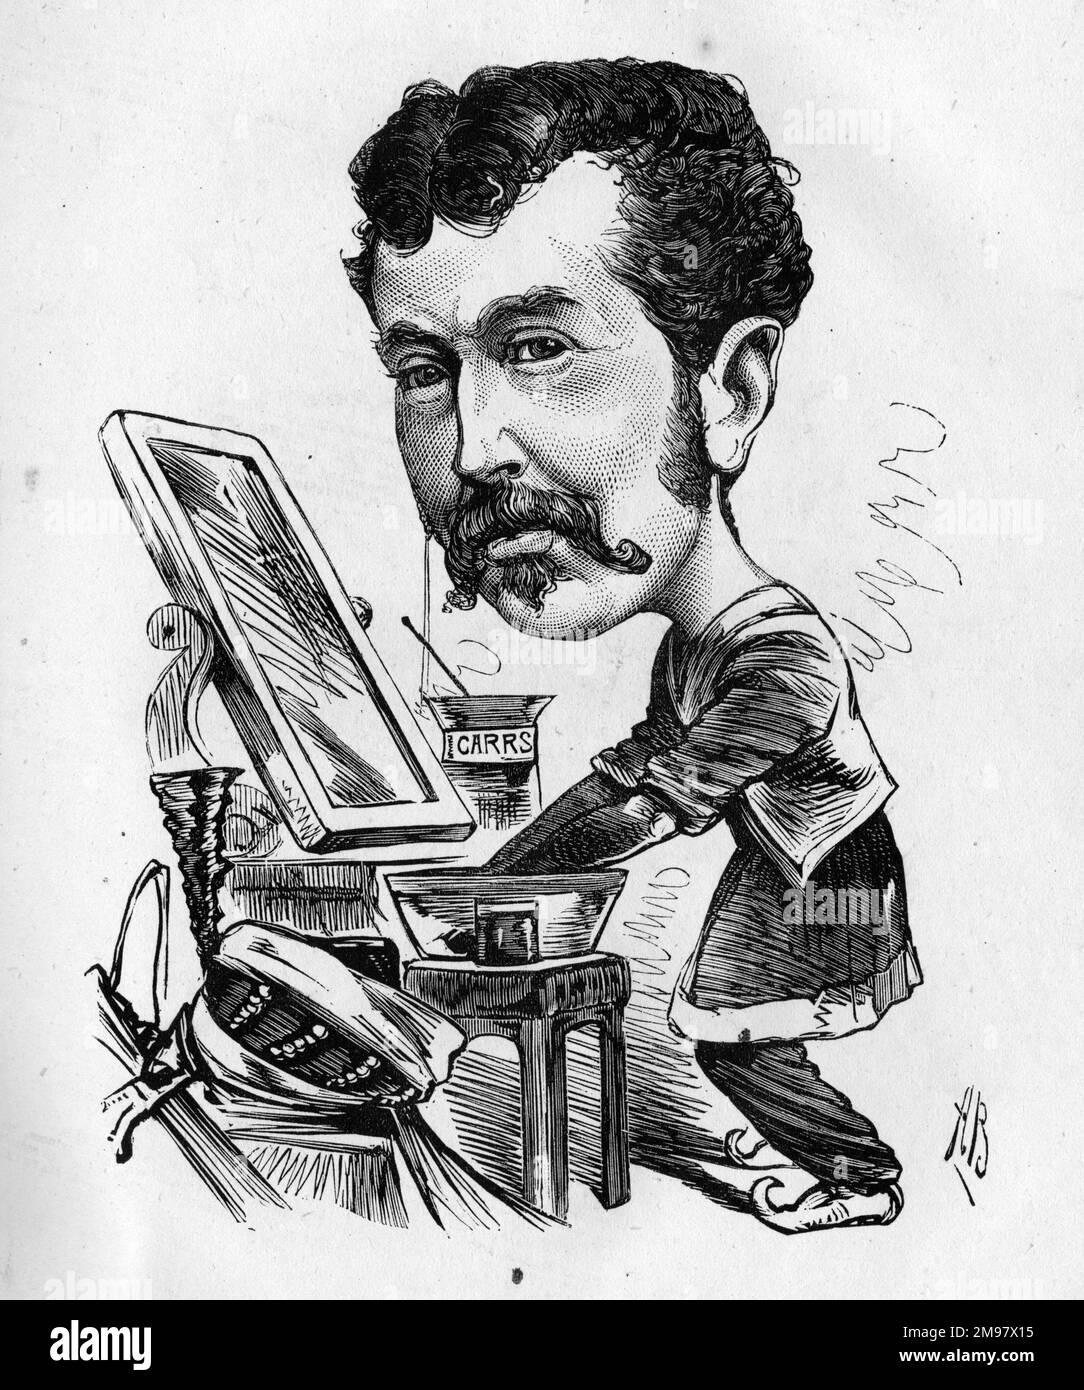 Dessin animé de Charles Lickfold Warner (1846-1909), acteur anglais, vu ici se préparer dans son dressing. Mettre sur la peinture de guerre. Banque D'Images